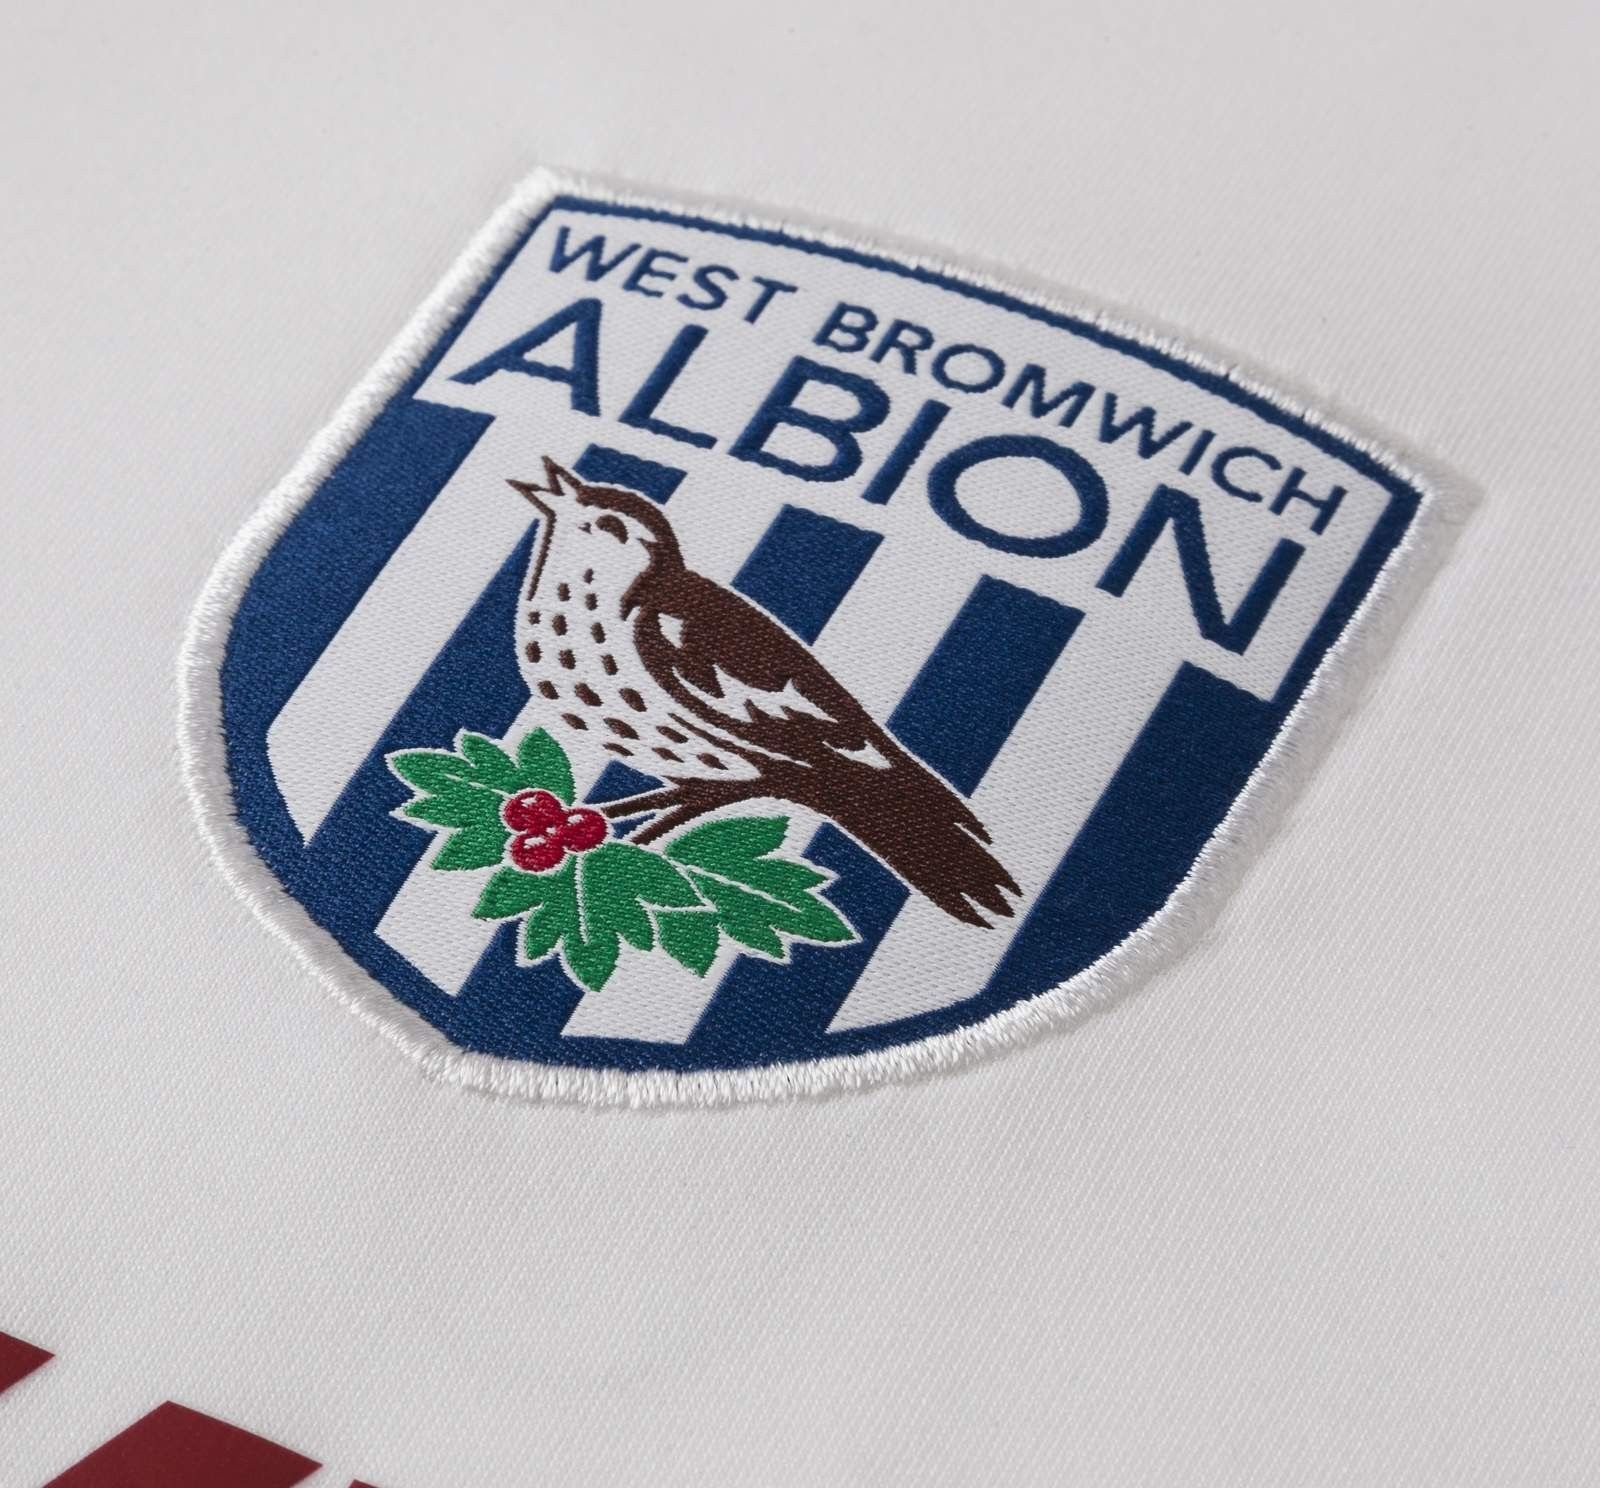 West Bromwich Albion F.C. uitshirt seizoen 2017/2018